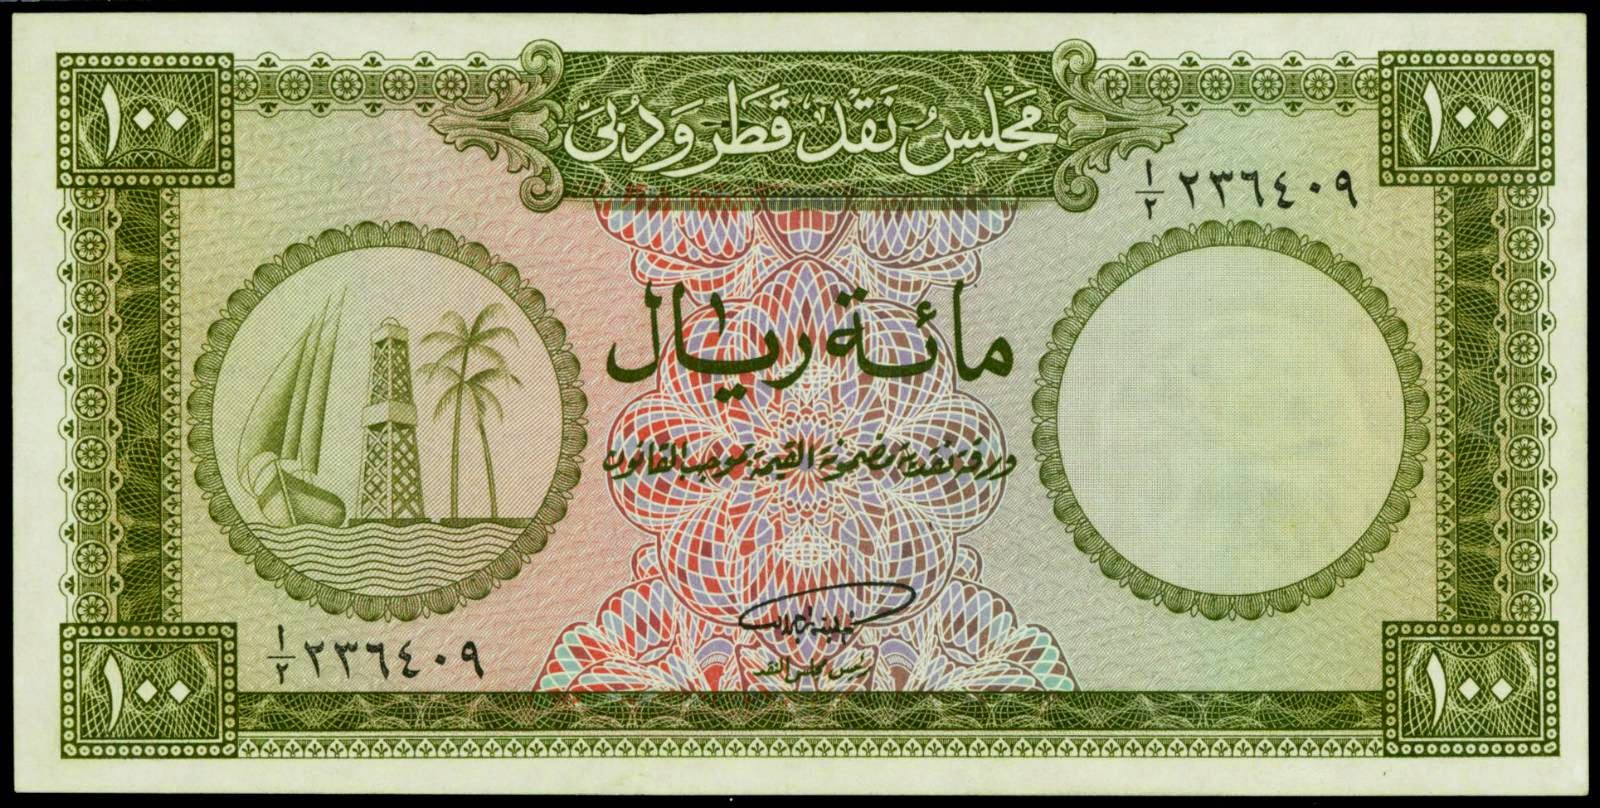 Qatar and Dubai Currency banknotes 100 Riyals note 1960